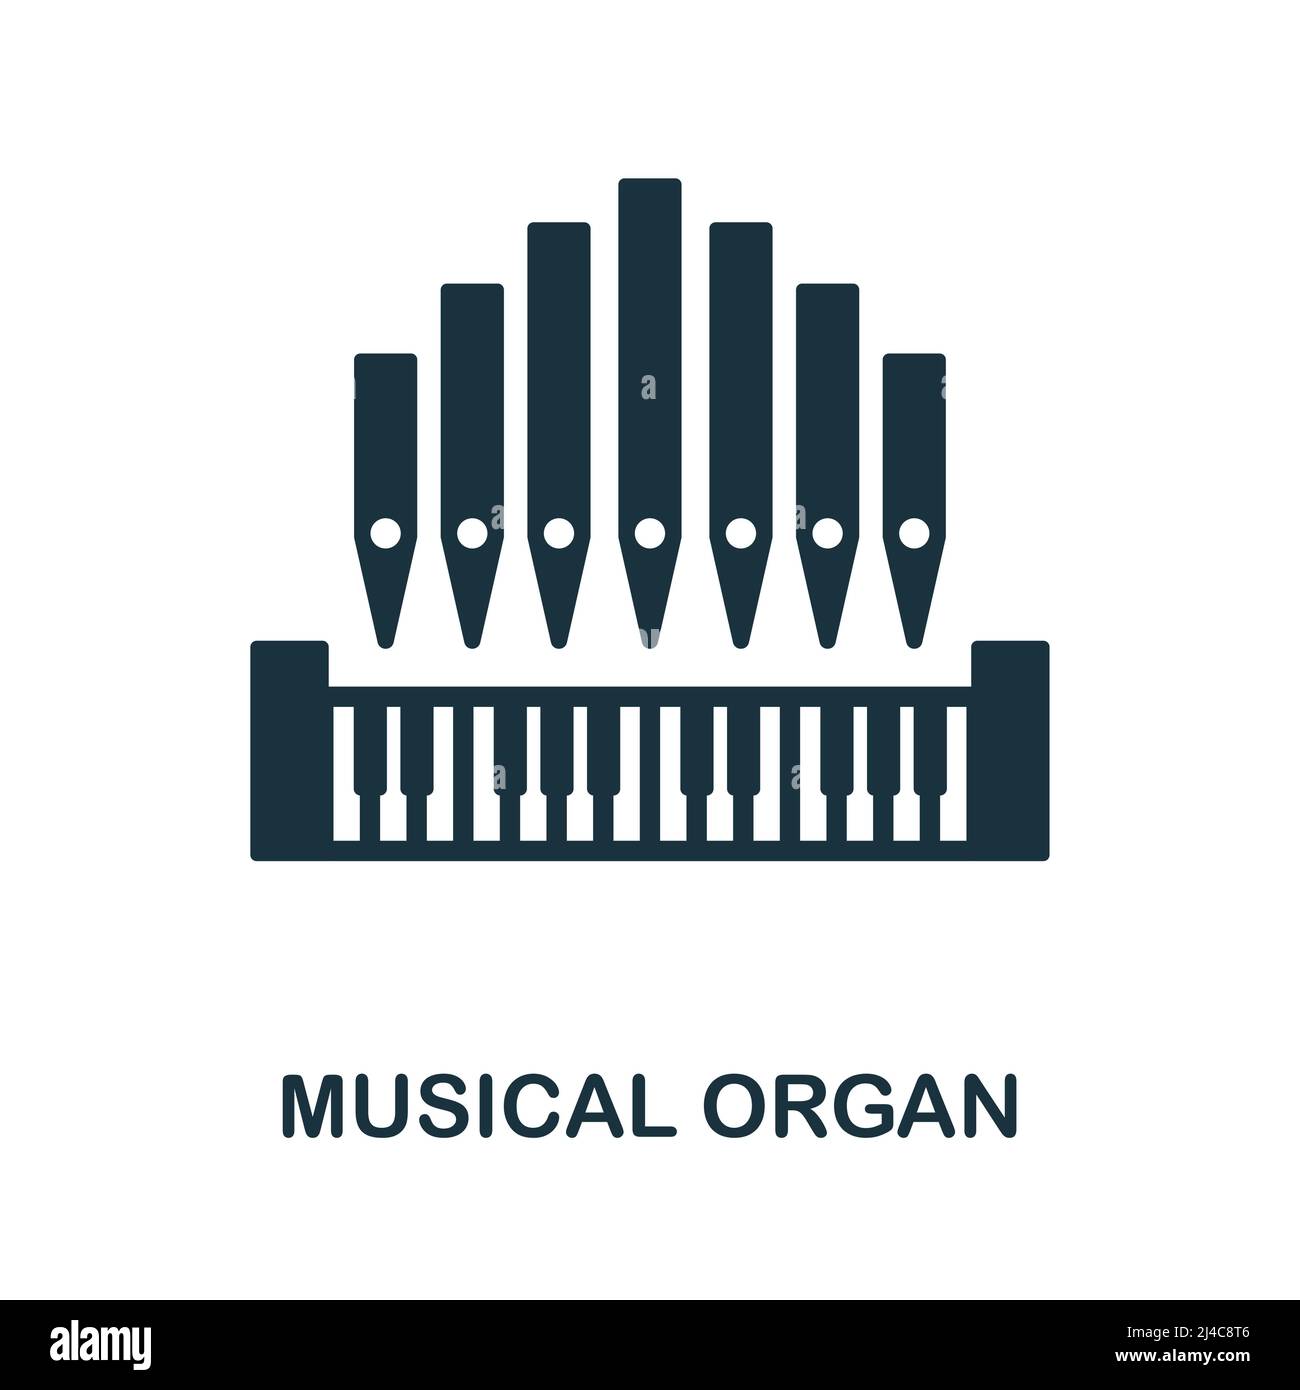 Icône organe musical. Élément simple de la collection d'instruments de musique. Icône Creative musical Organ pour la conception Web, les modèles, les infographies et bien plus encore Illustration de Vecteur